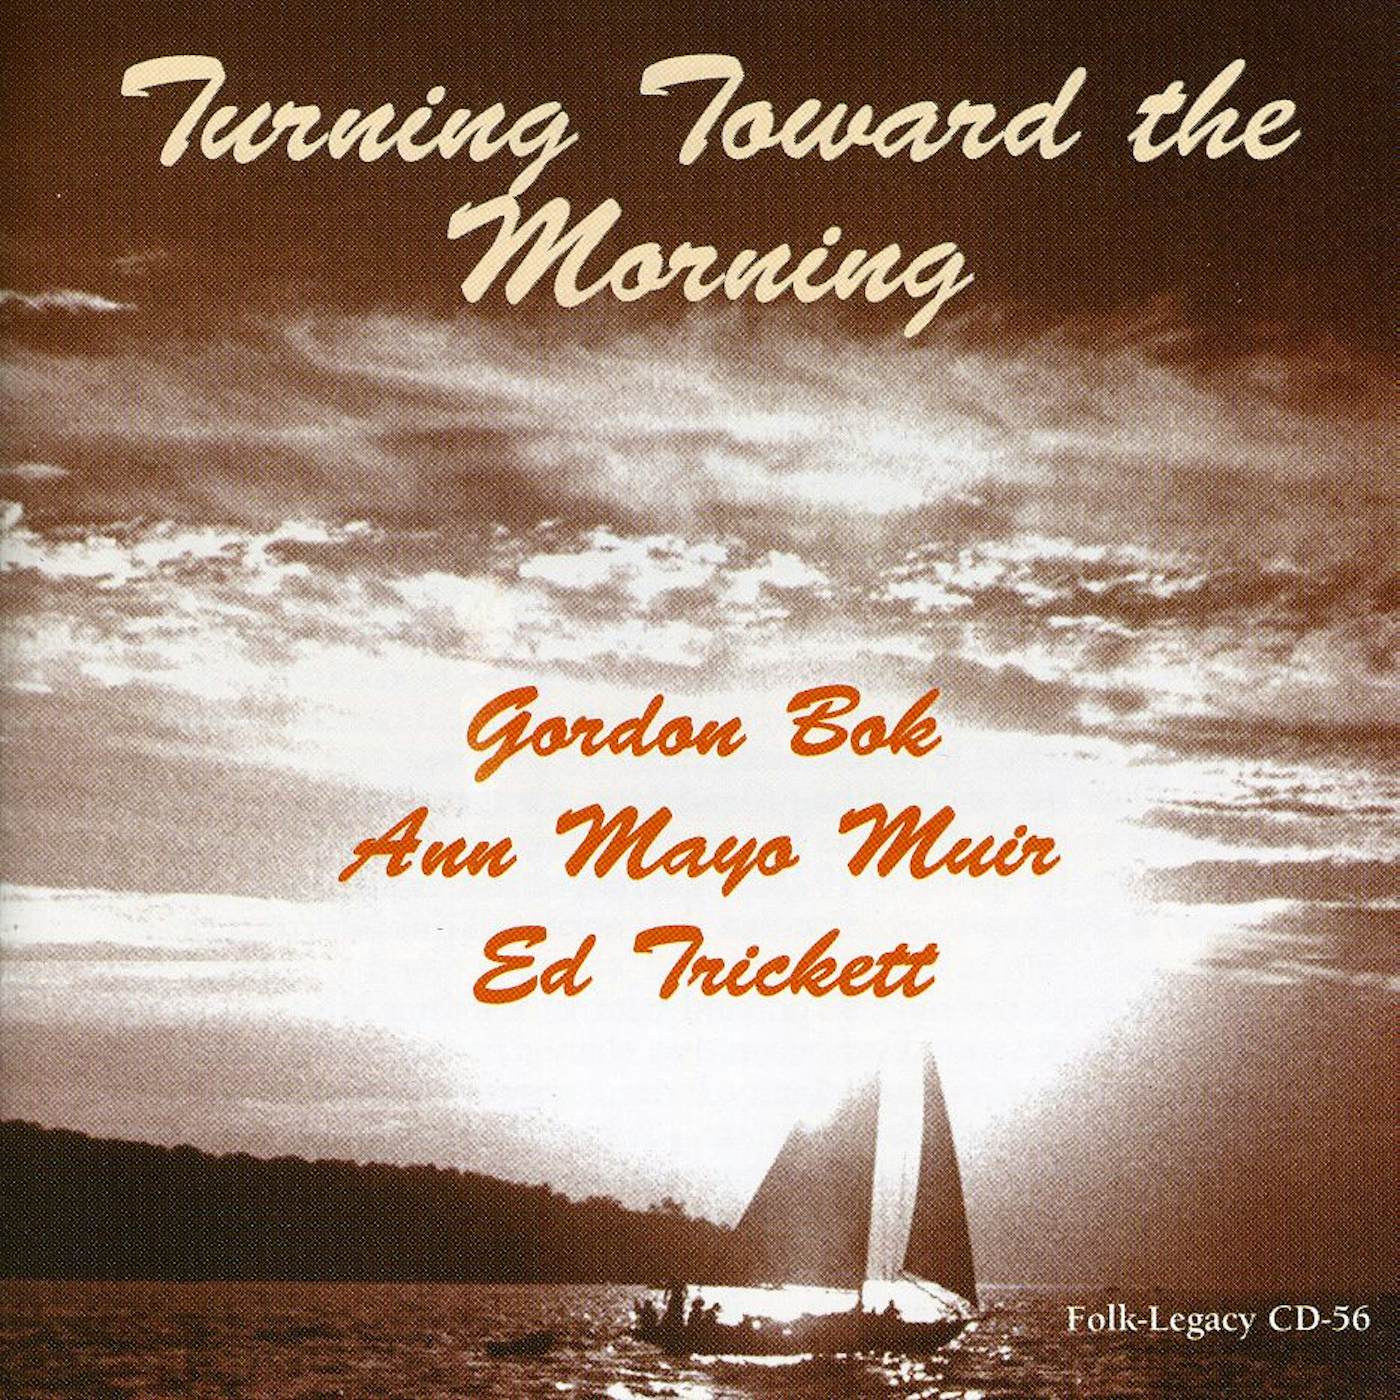 Gordon Bok, Ed Trickett, Ann Mayo Muir TURNING TOWARD MORNING CD